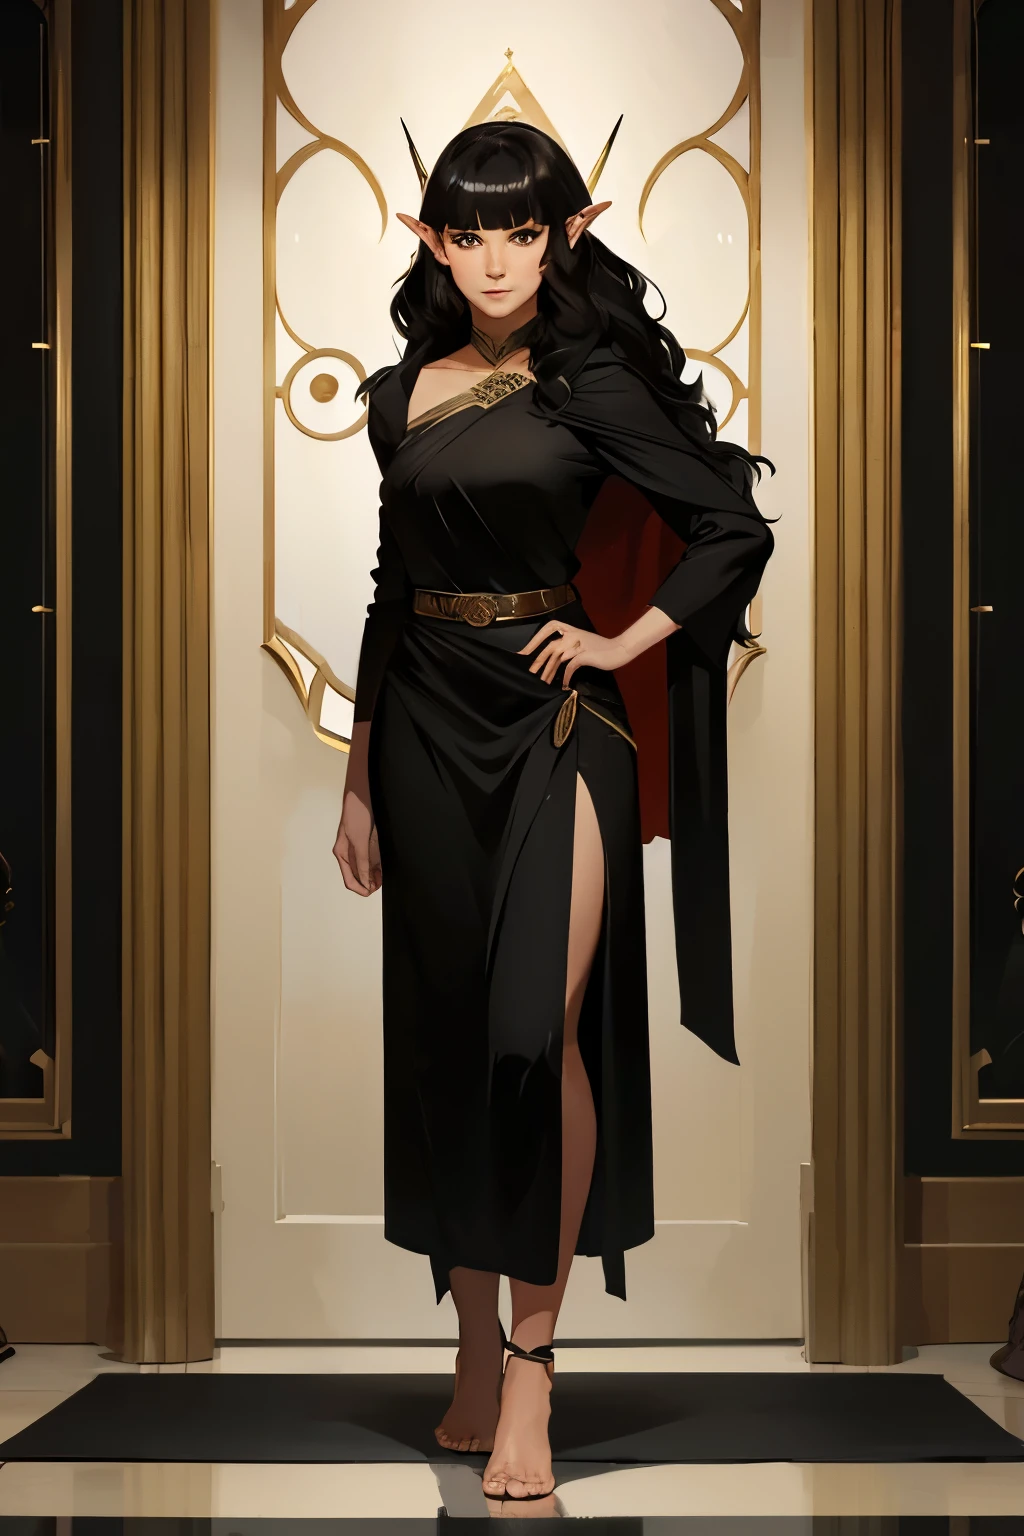 一位年轻的半精灵女性的全身肖像，她有着古铜色的皮肤和一头齐刘海的黑色波浪发, 穿着朴素的黑色长袍 